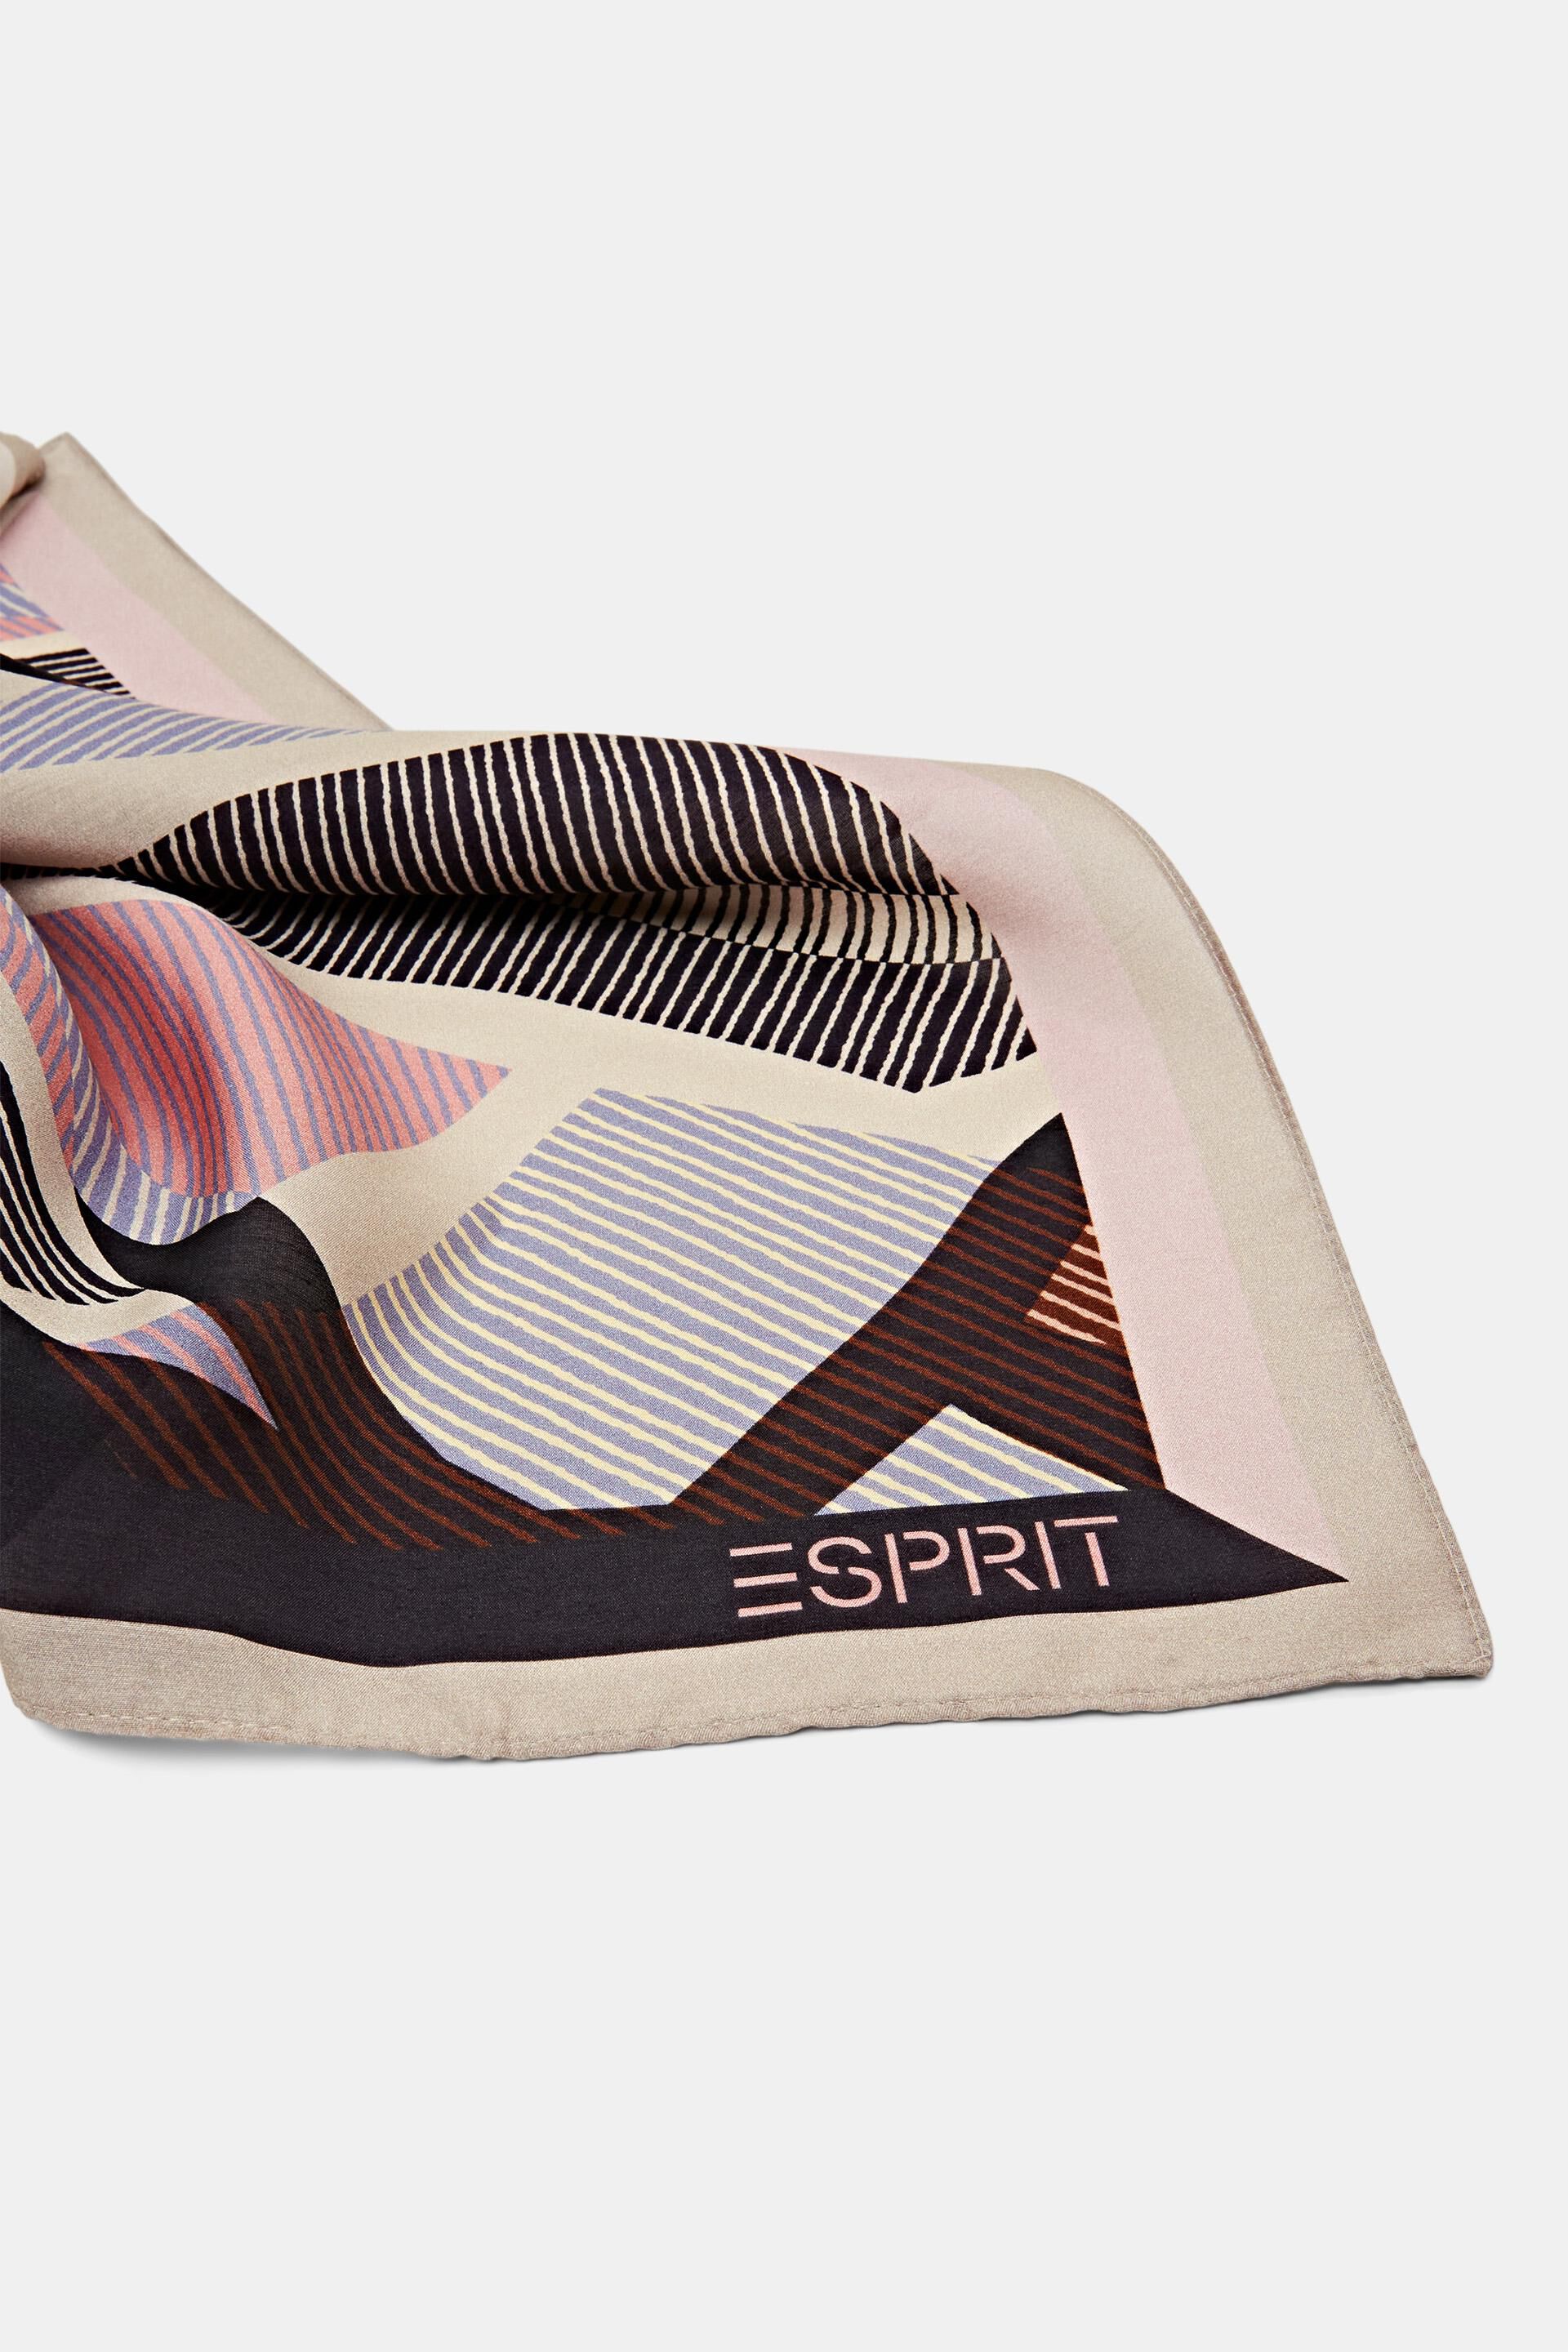 Esprit Online Store Bedrucktes Bandana aus Seidenmischung